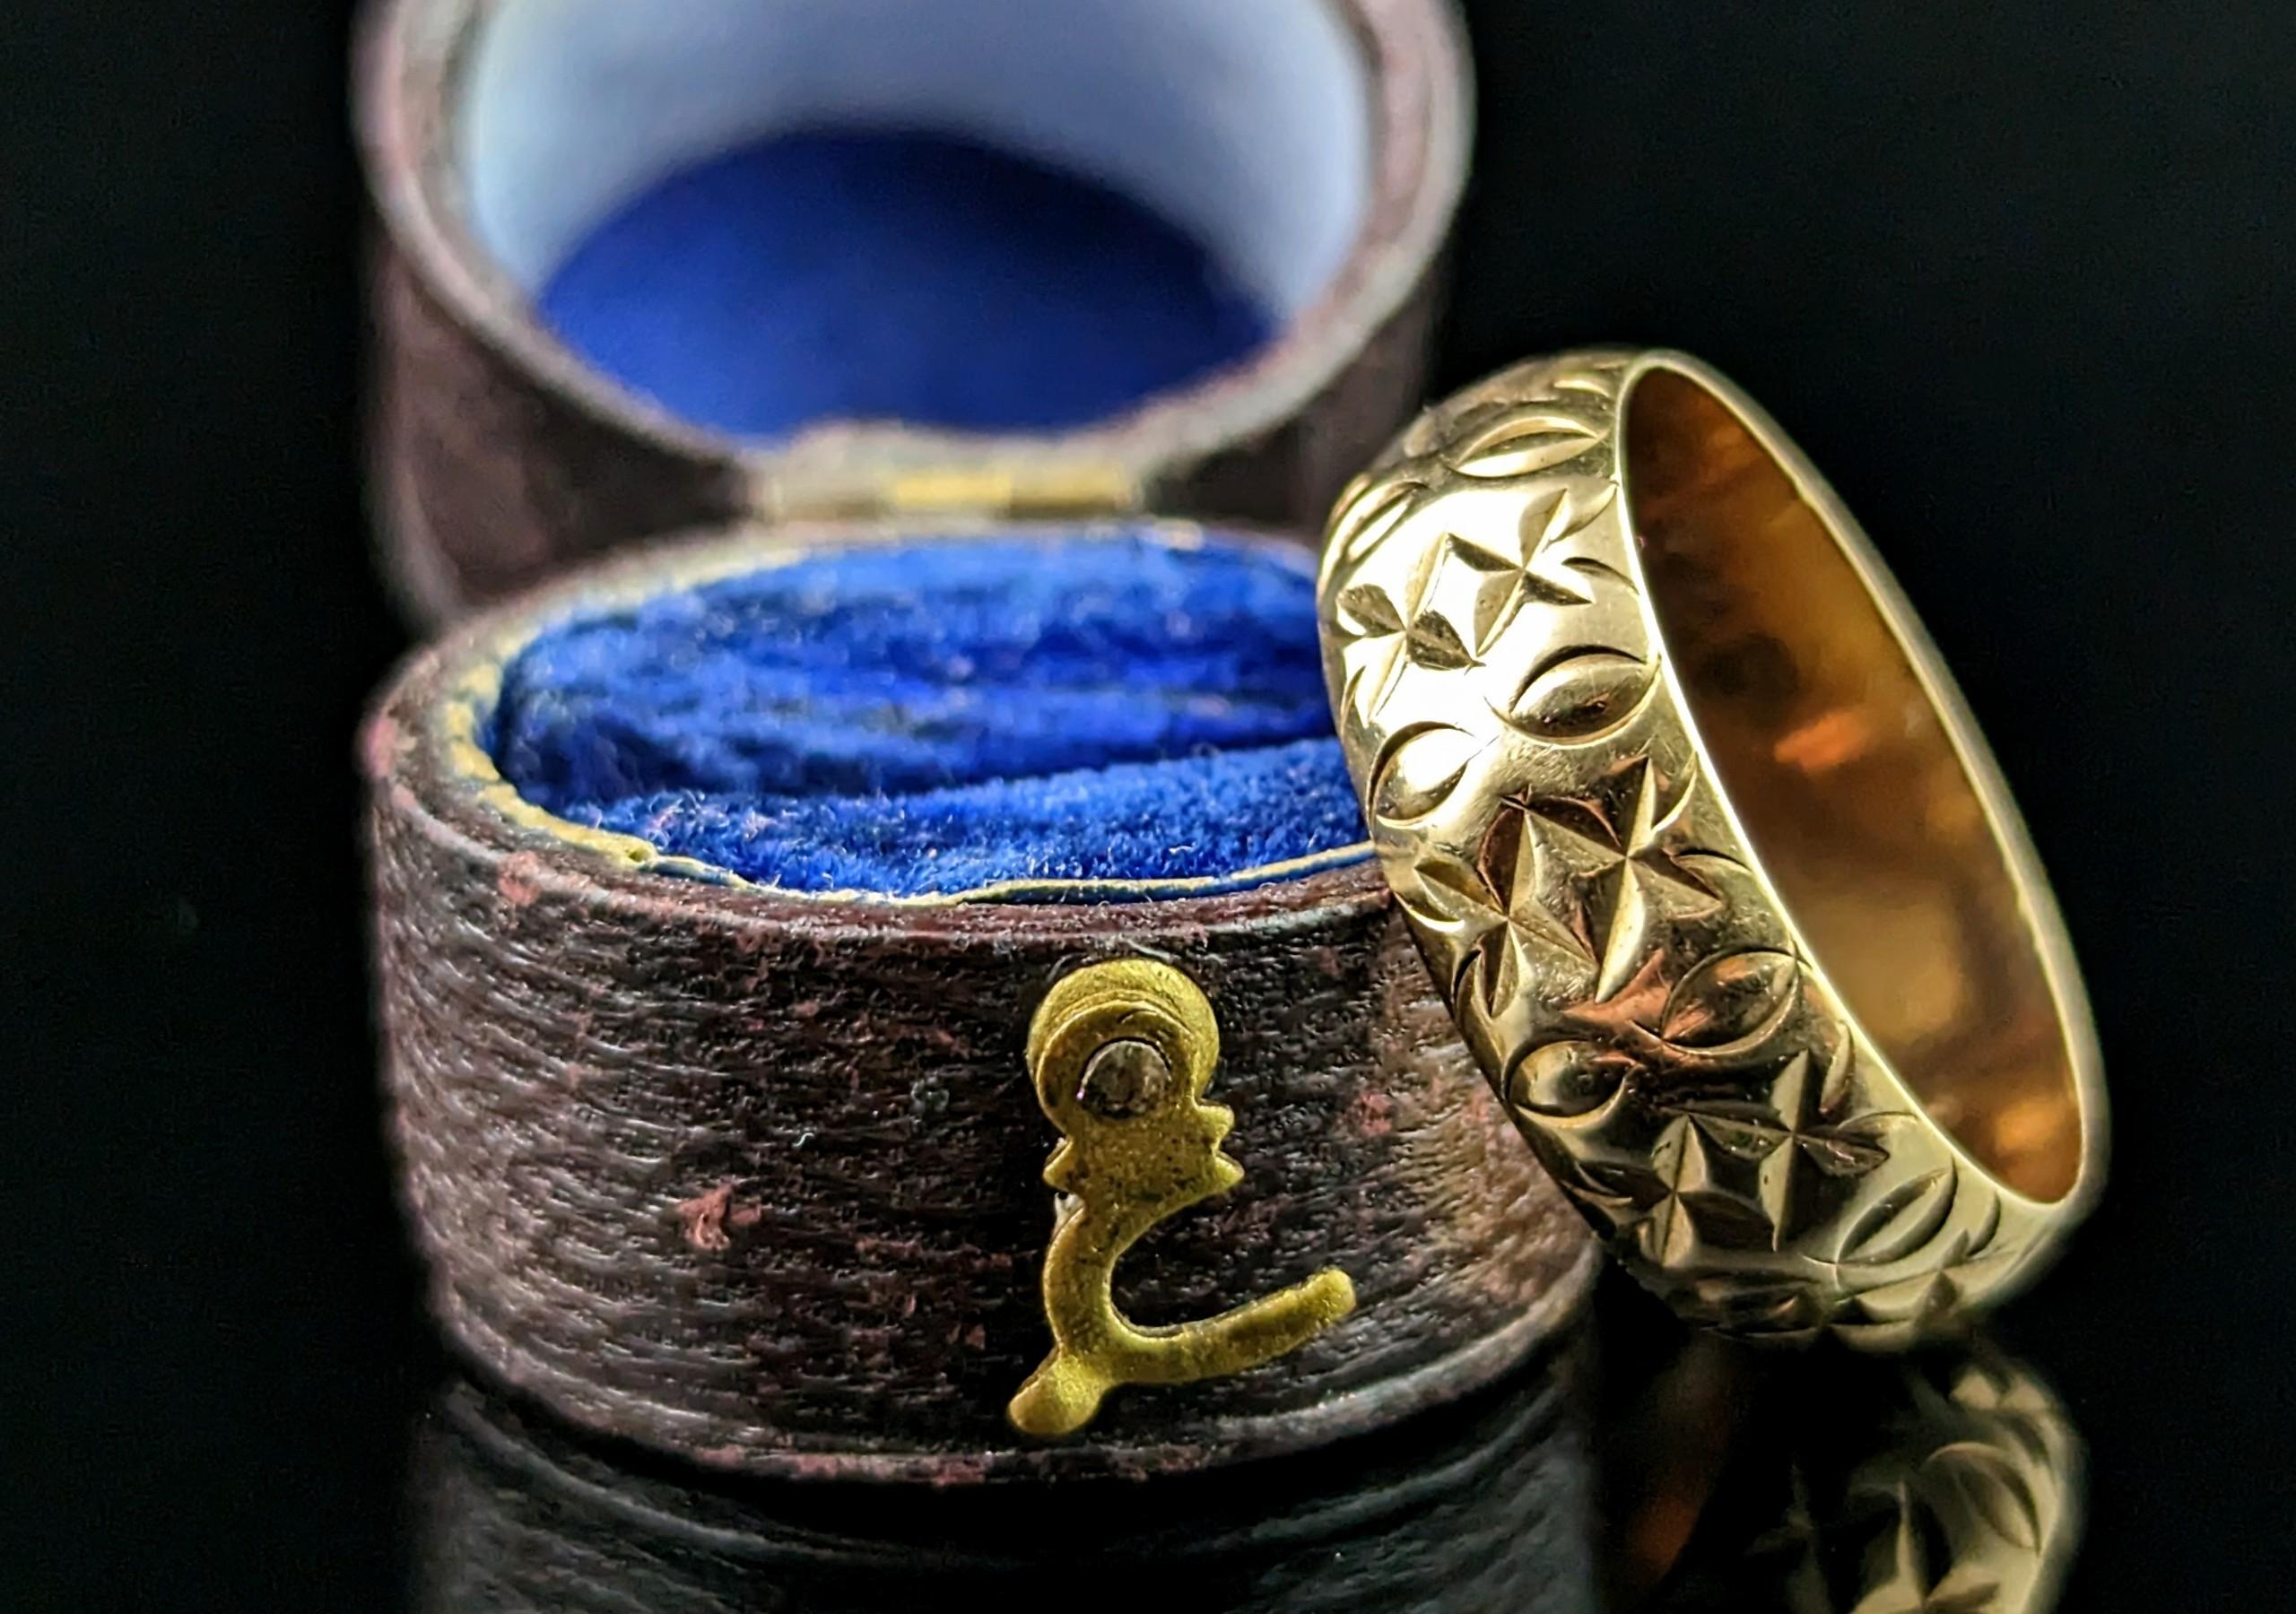 Eine wunderschöne Vintage 9ct Gelbgold Band Ring.

Es handelt sich um einen klobigen und breiten Ring mit einem leicht gewölbten Profil und einem attraktiven Gravurmuster.

Dieses Stück hebt den einfachen Bandring mit einem lebendigen Gravurmuster